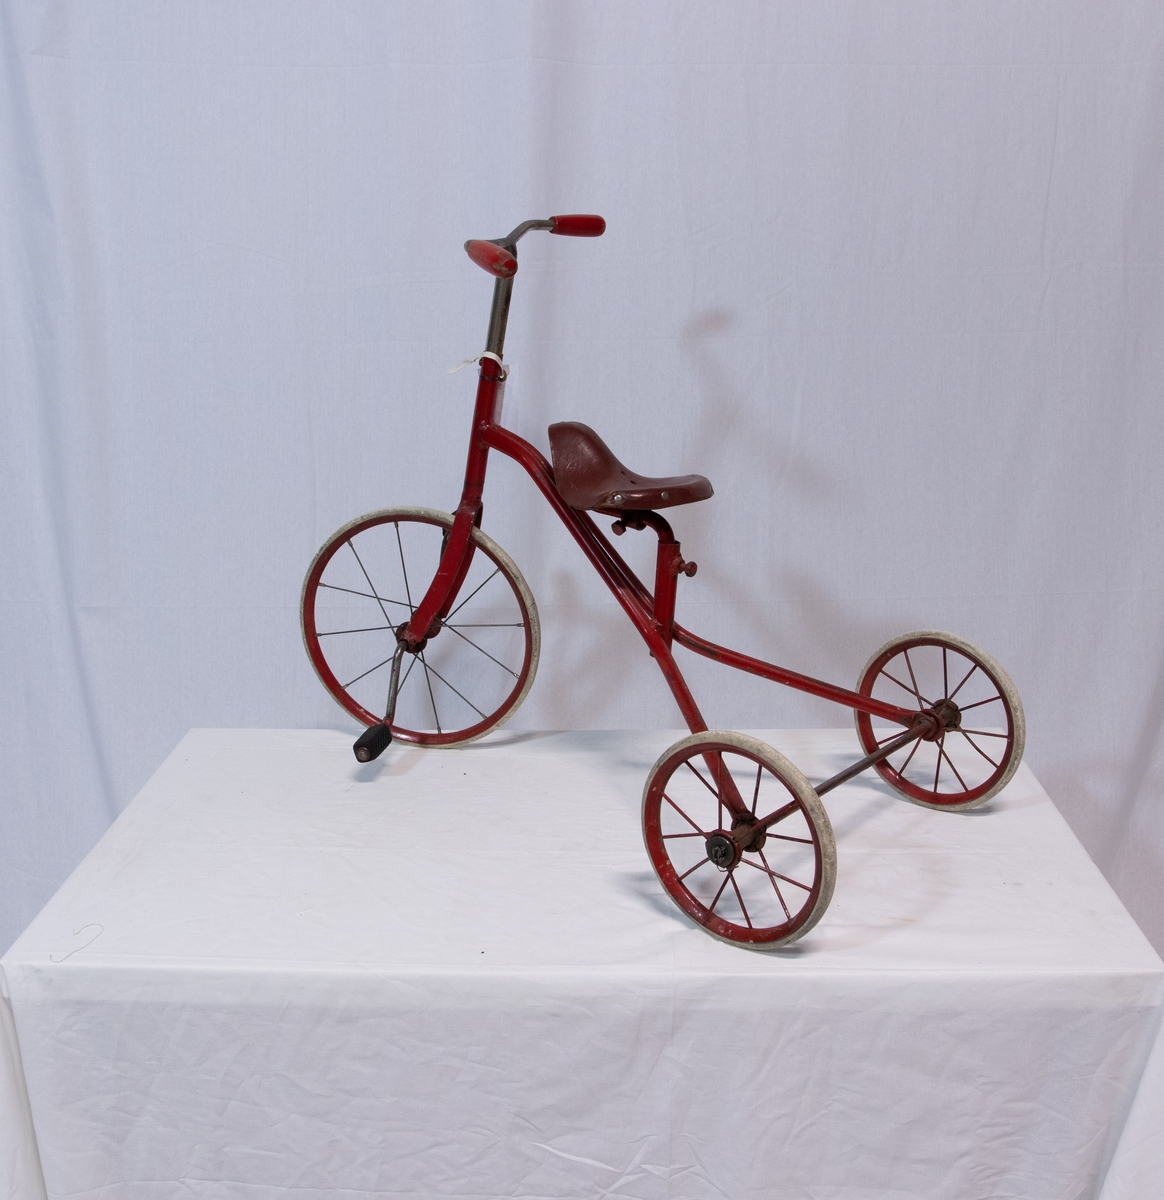 Trehjulsykkel m/rødmalt sykkelramme i stål. To mindre bakhjul, et stort forhjul. Eiker i lettmetall. Hard gråhvit gummi på hjulene. På pedalene tredd to gummi fotstykker, riflemønster. På styret
to sylindriske trehåndtak, rødmalt.